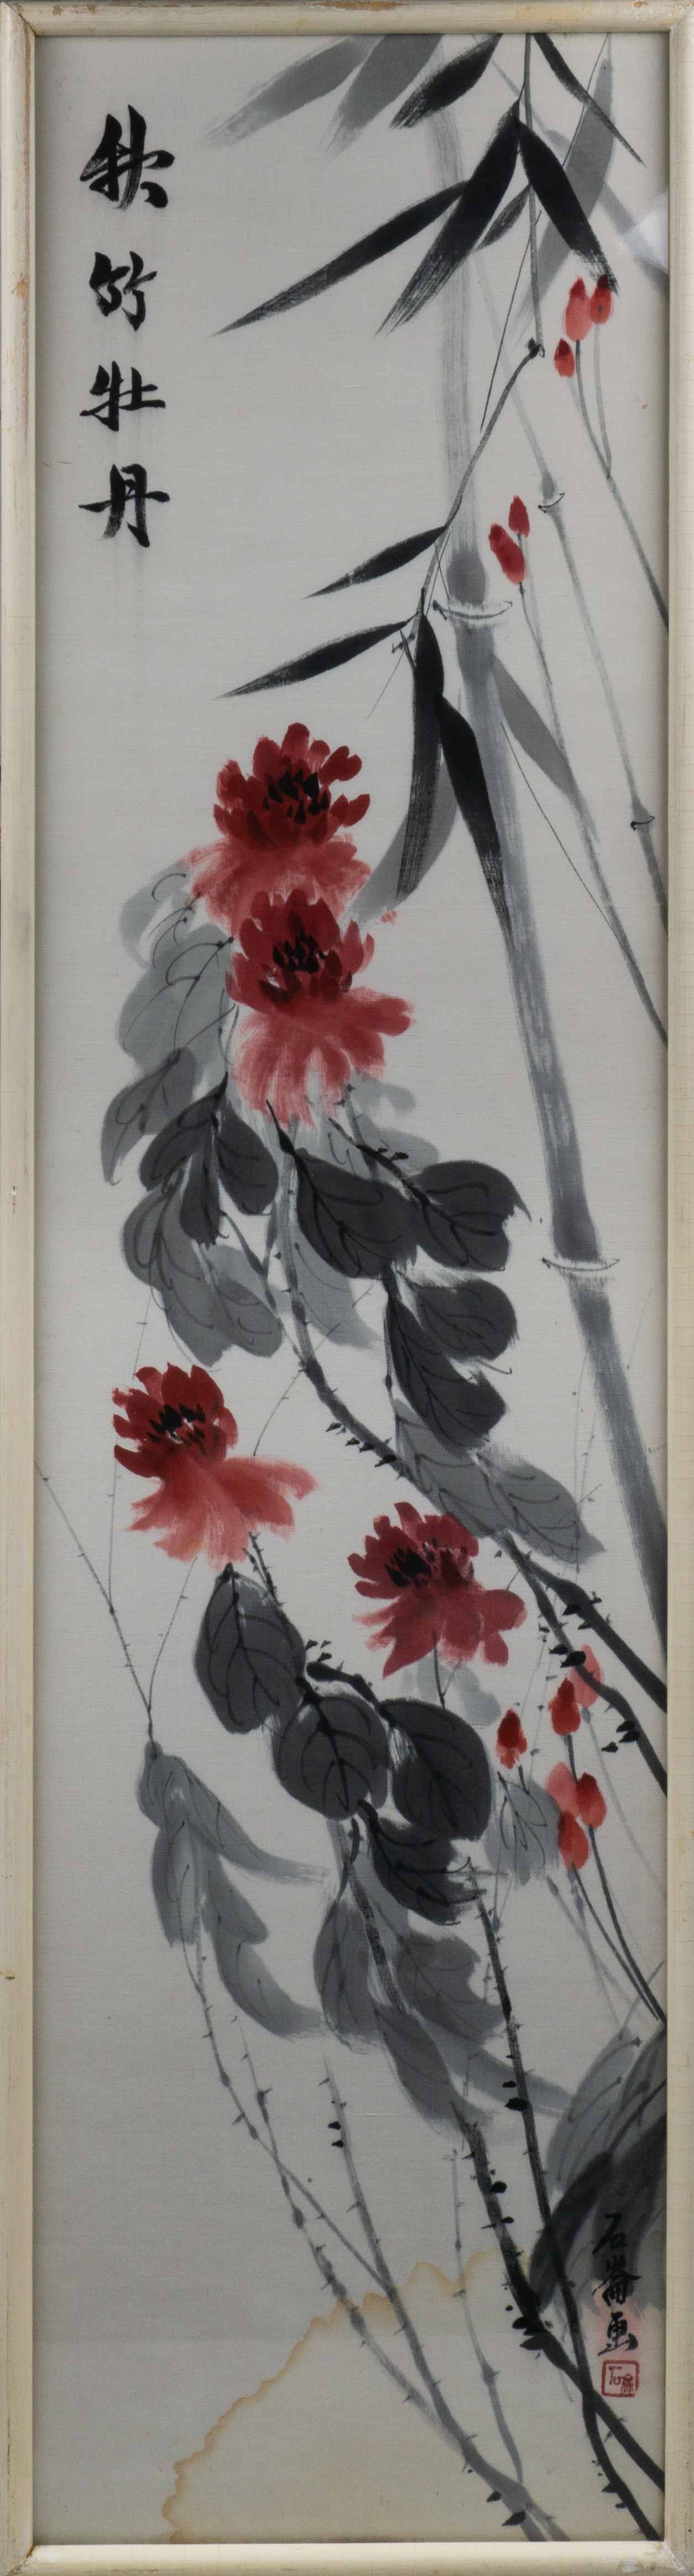 Цзянь Шилунь. Цветущие лозы. 1977.